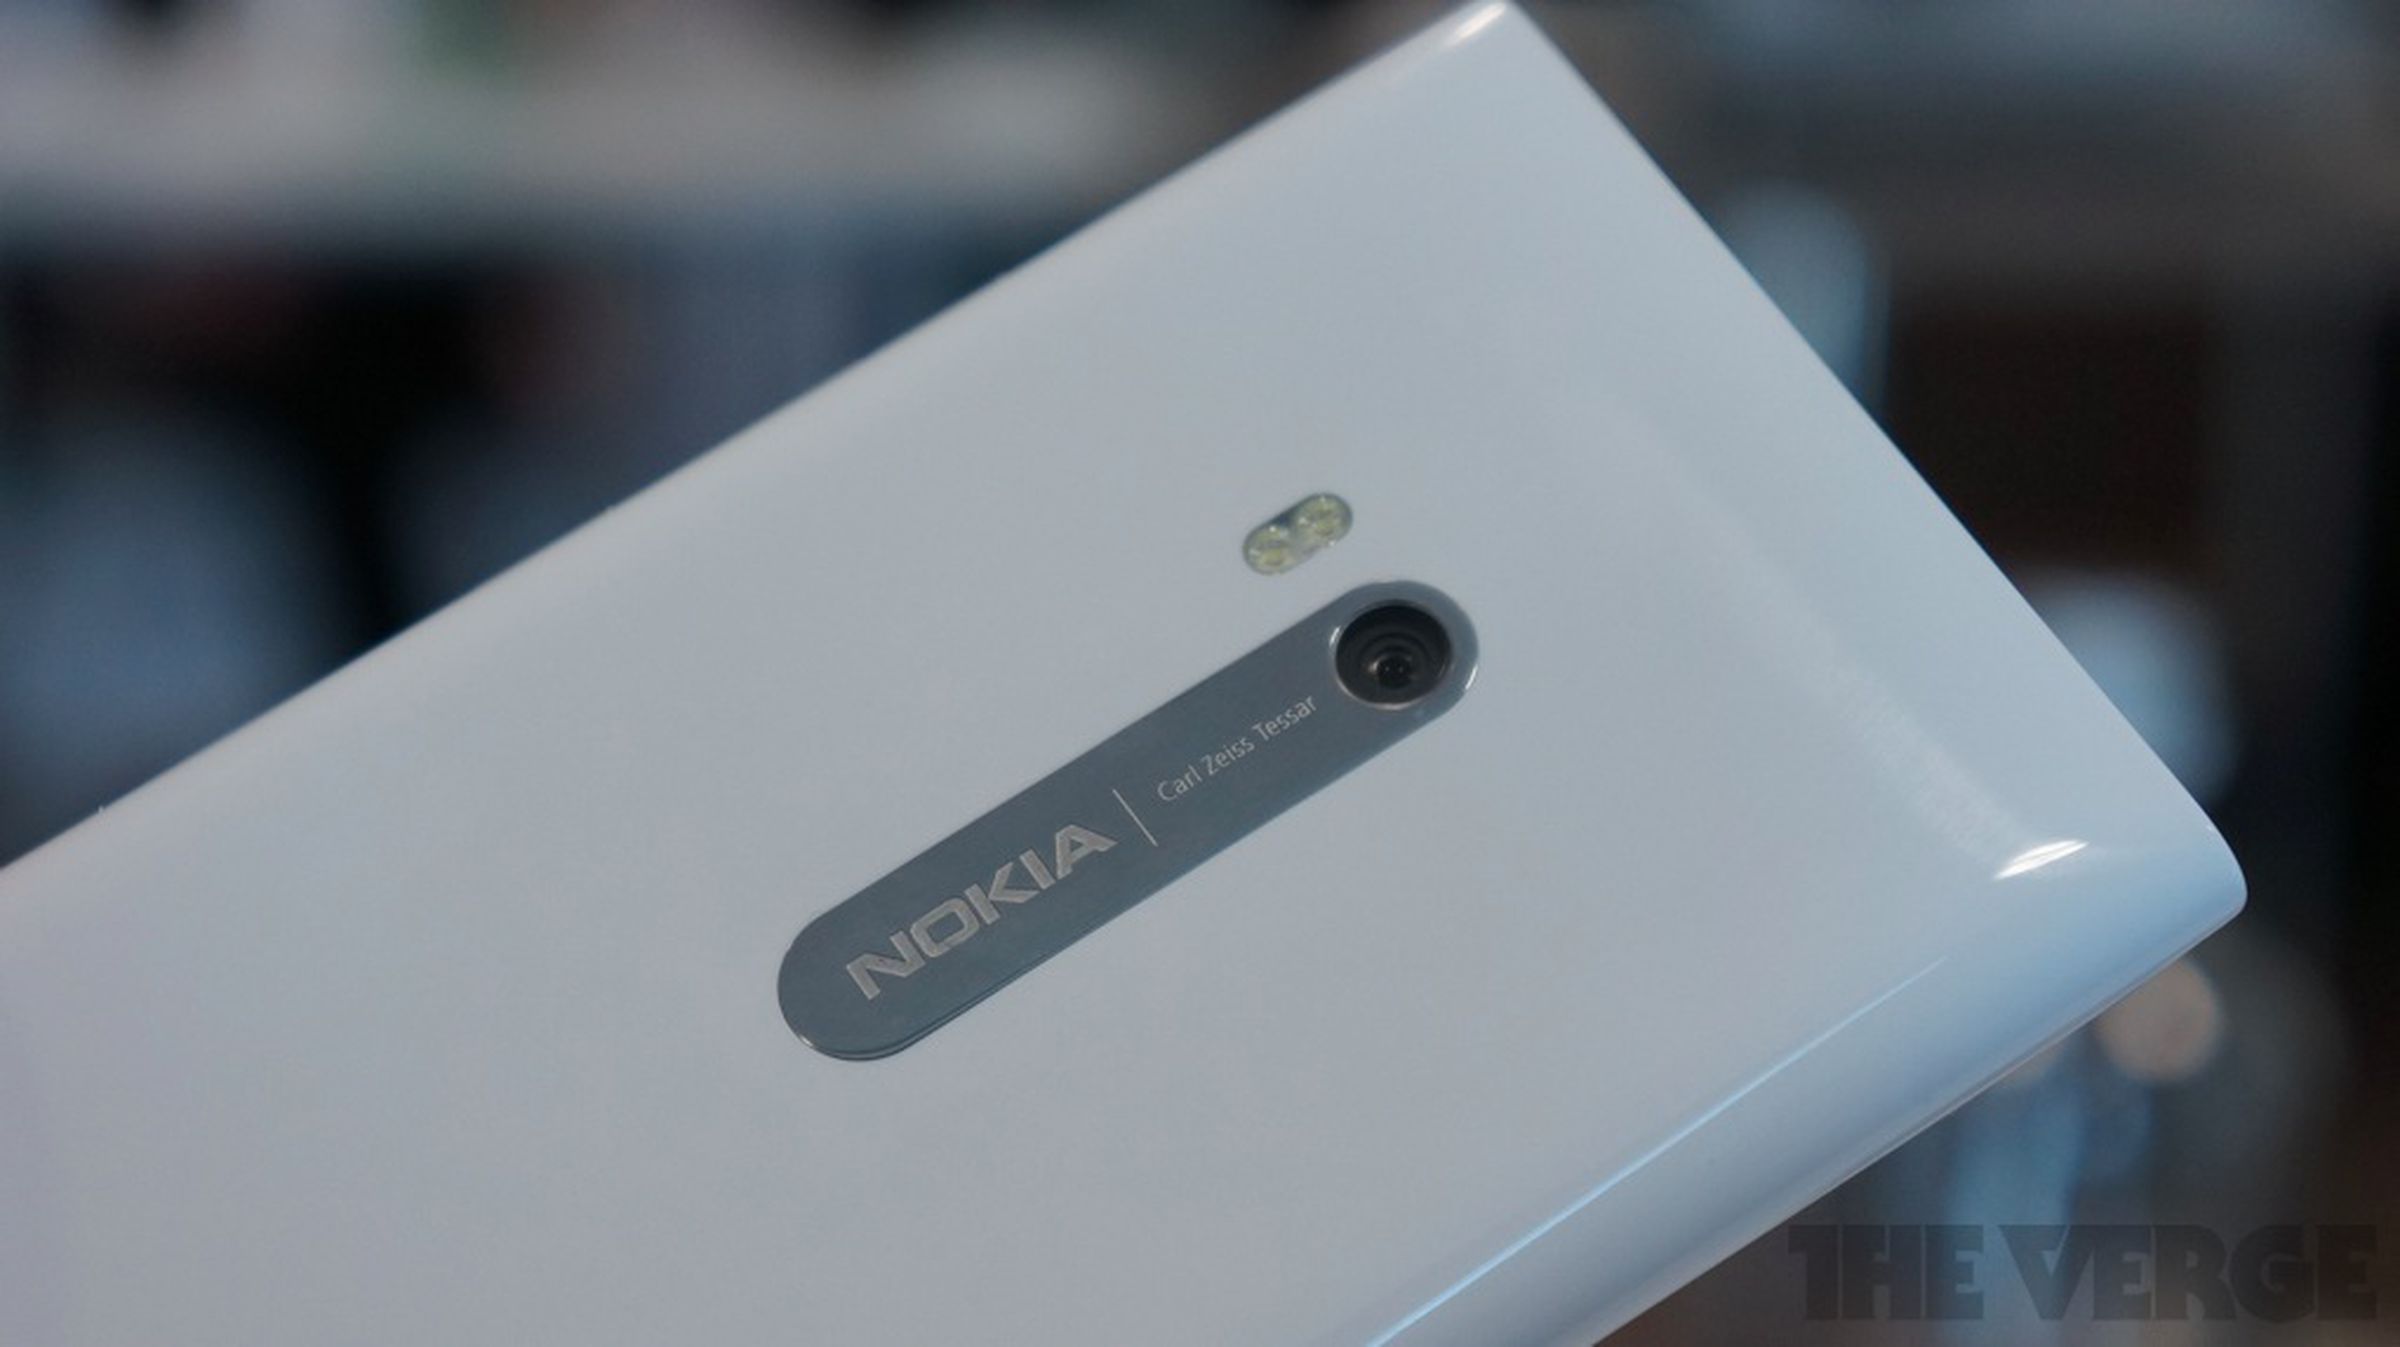 Nokia Lumia 900 in white, hands-on photos